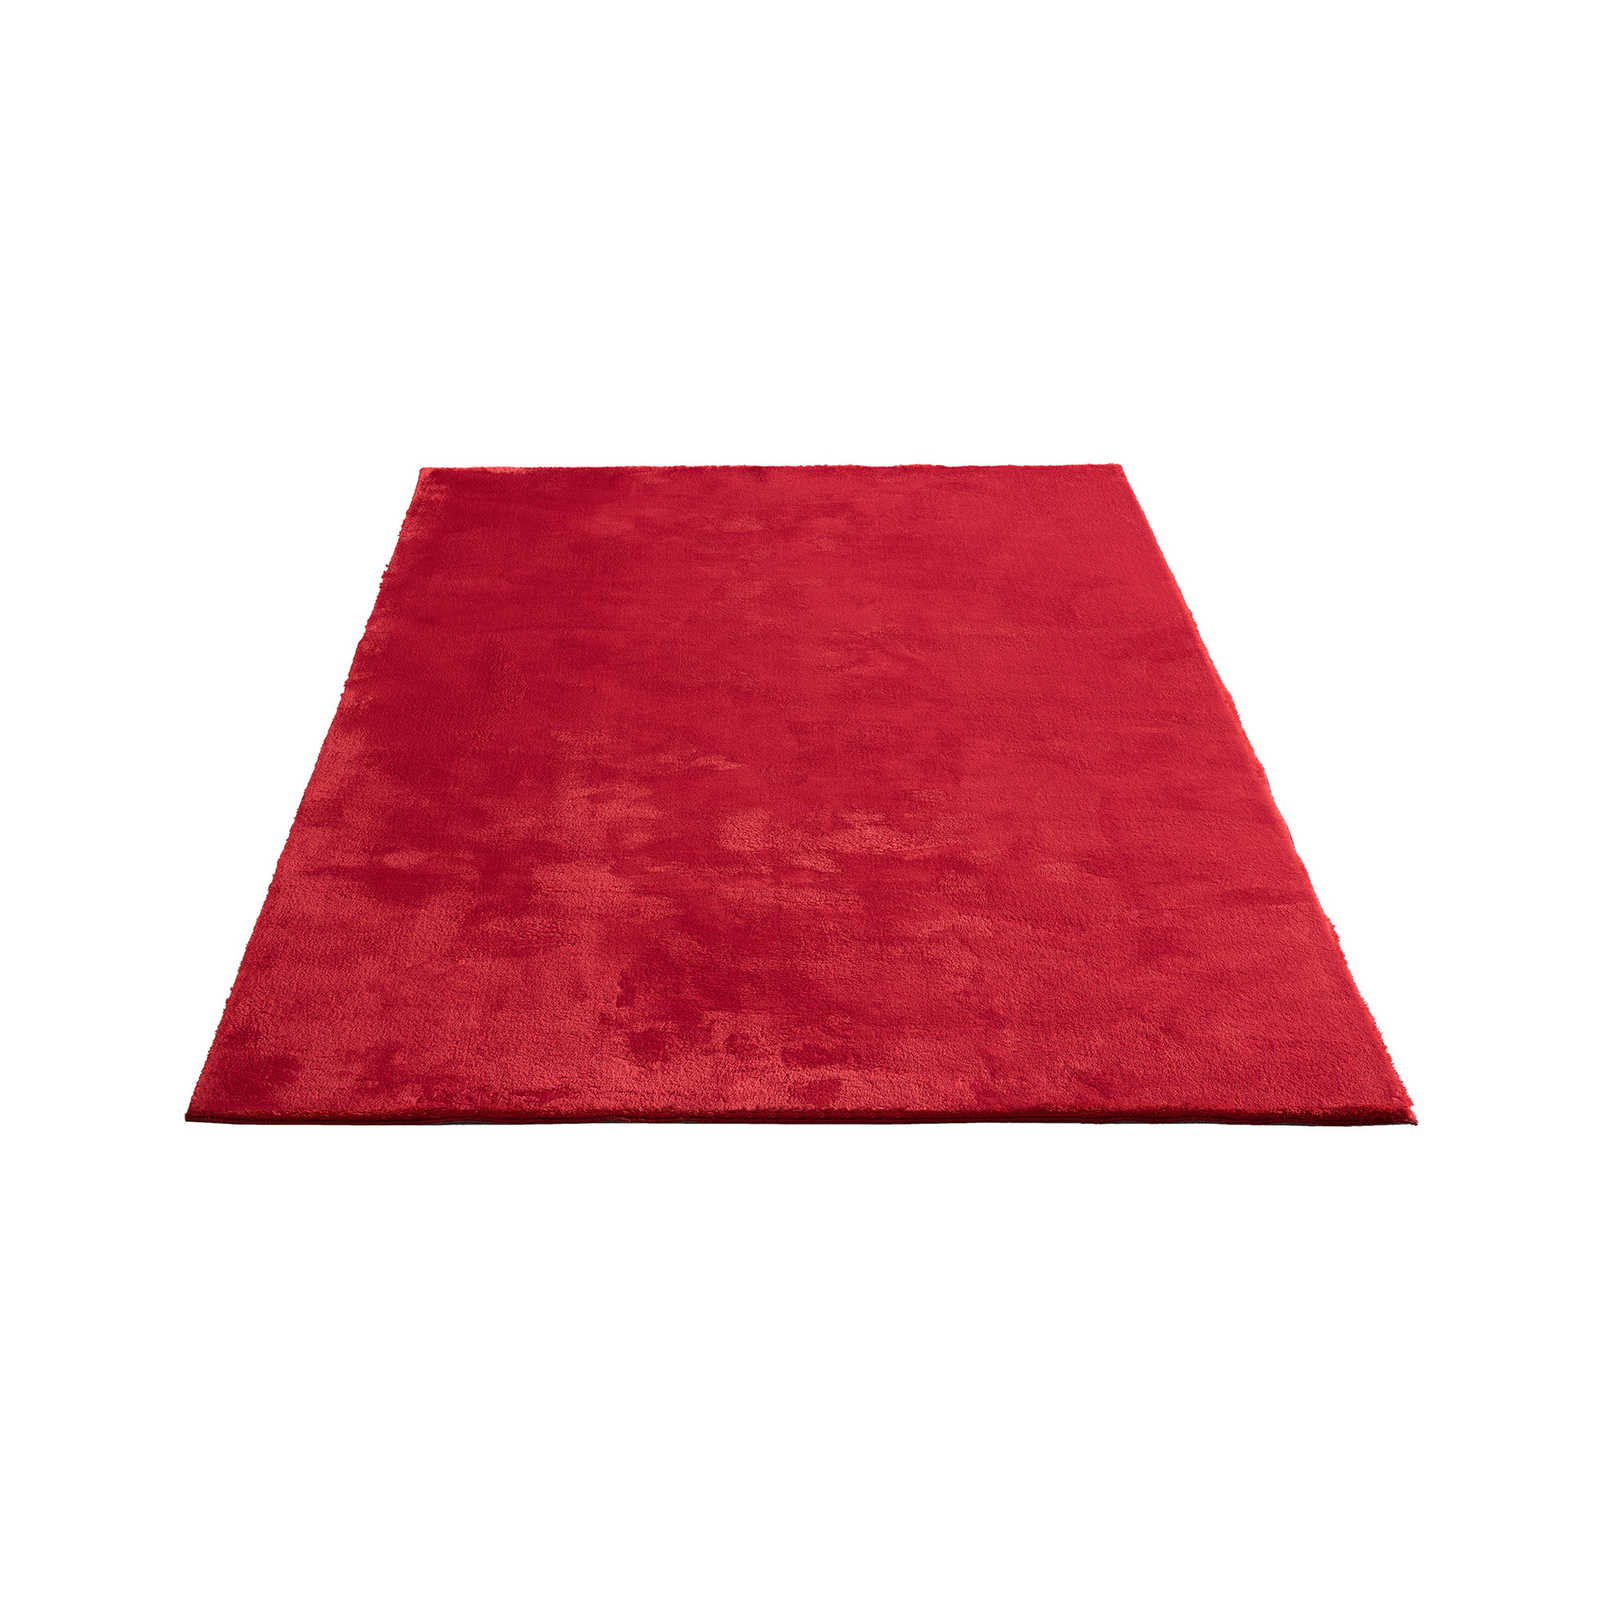 Besonders weicher Hochflor Teppich in Rot – 230 x 160 cm
